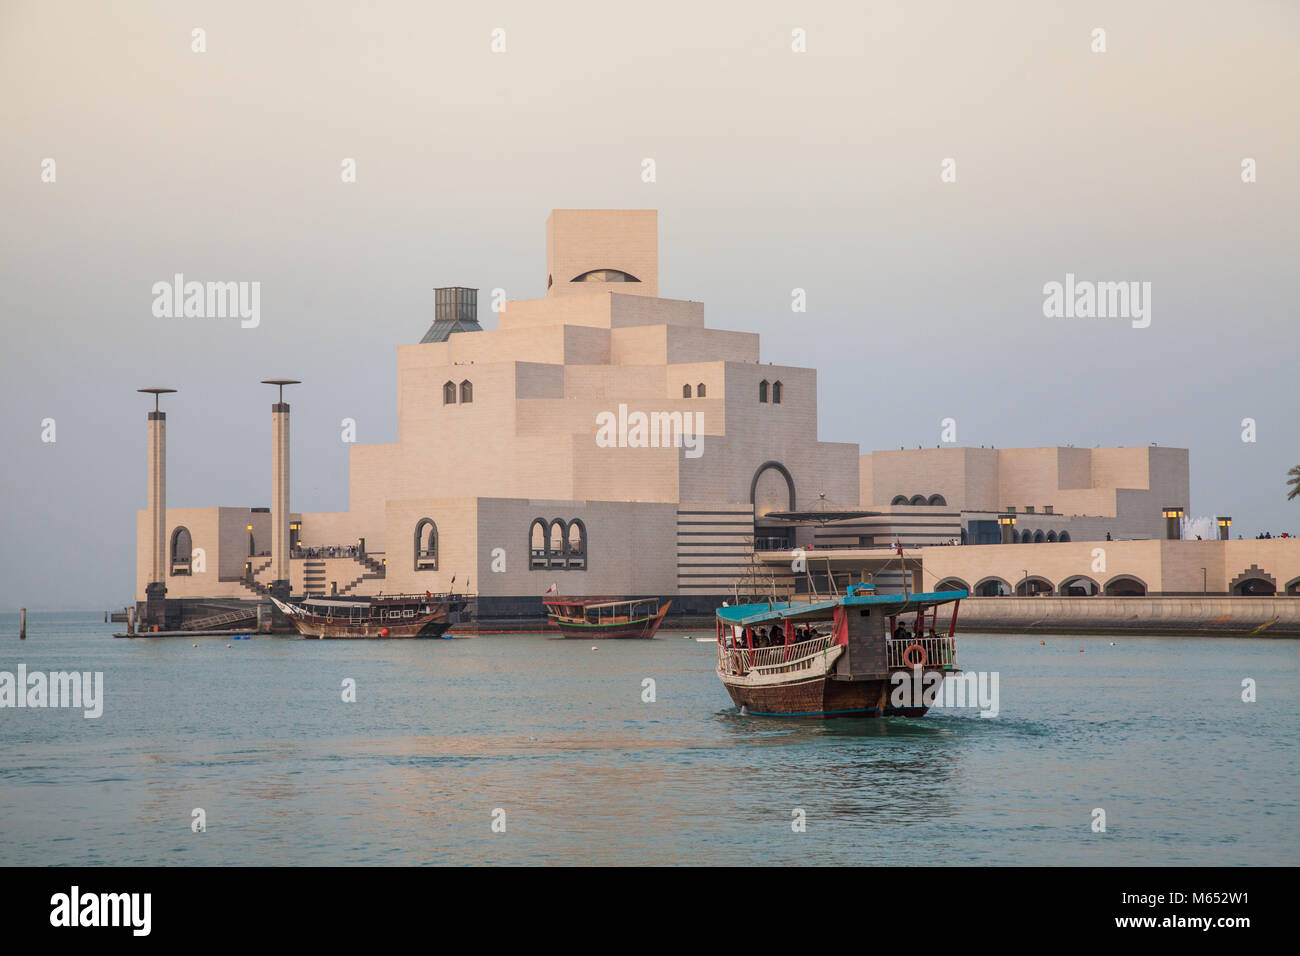 Mueseum of islamic culture, Doha, Qatar Stock Photo